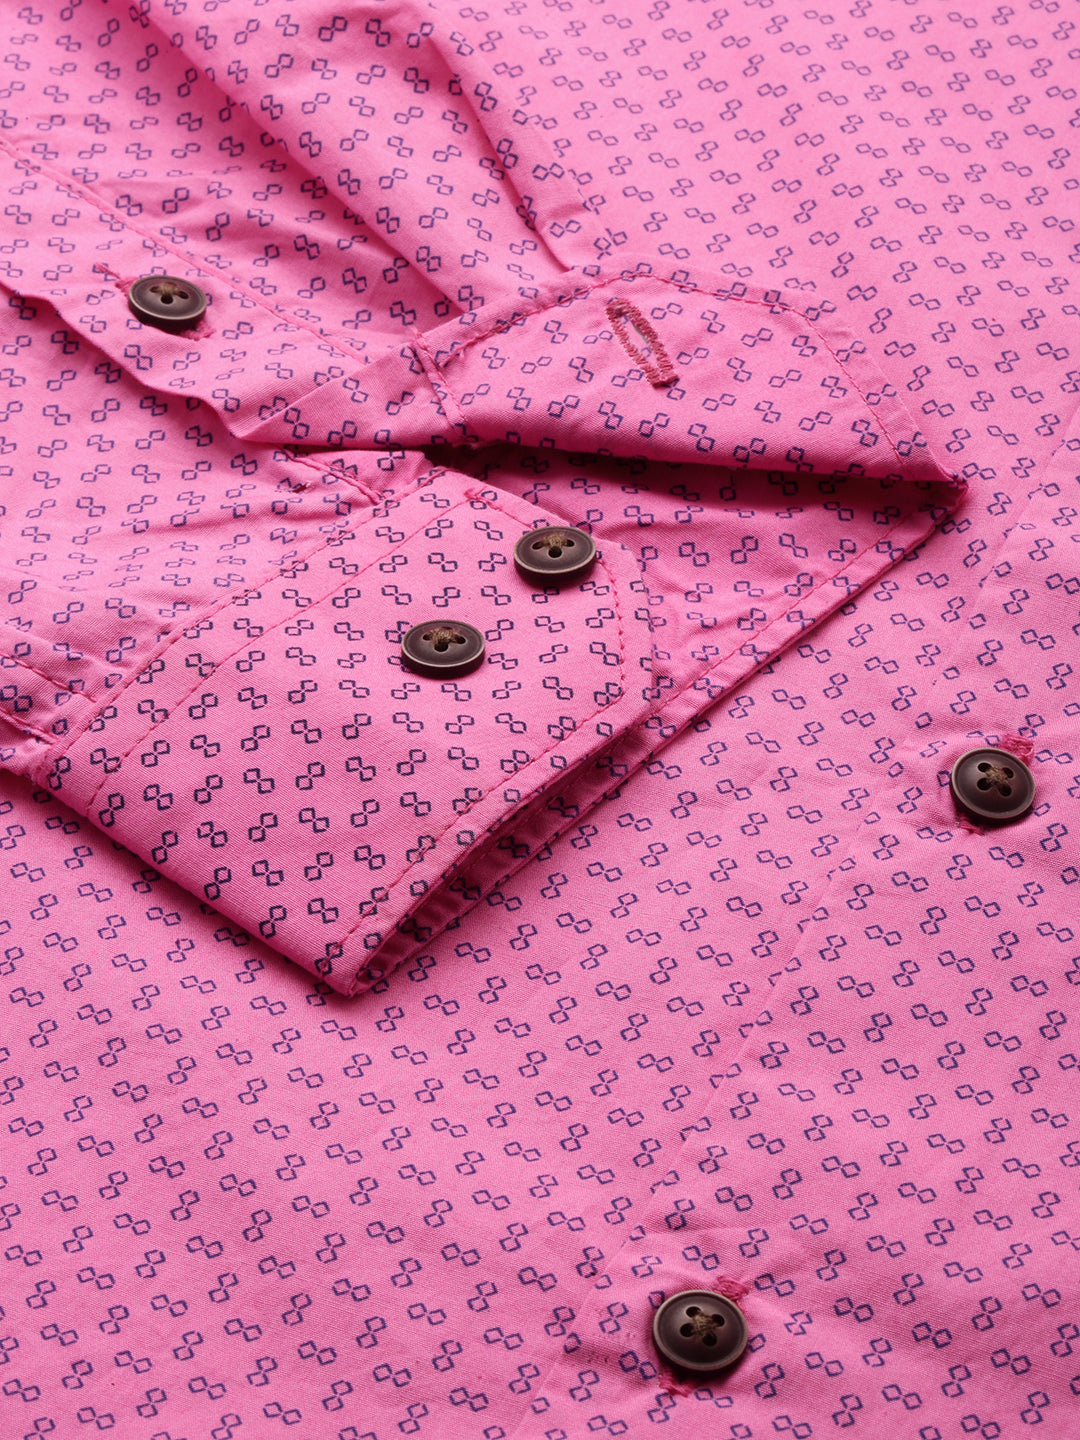 Men Pink Printed Casual Shirt